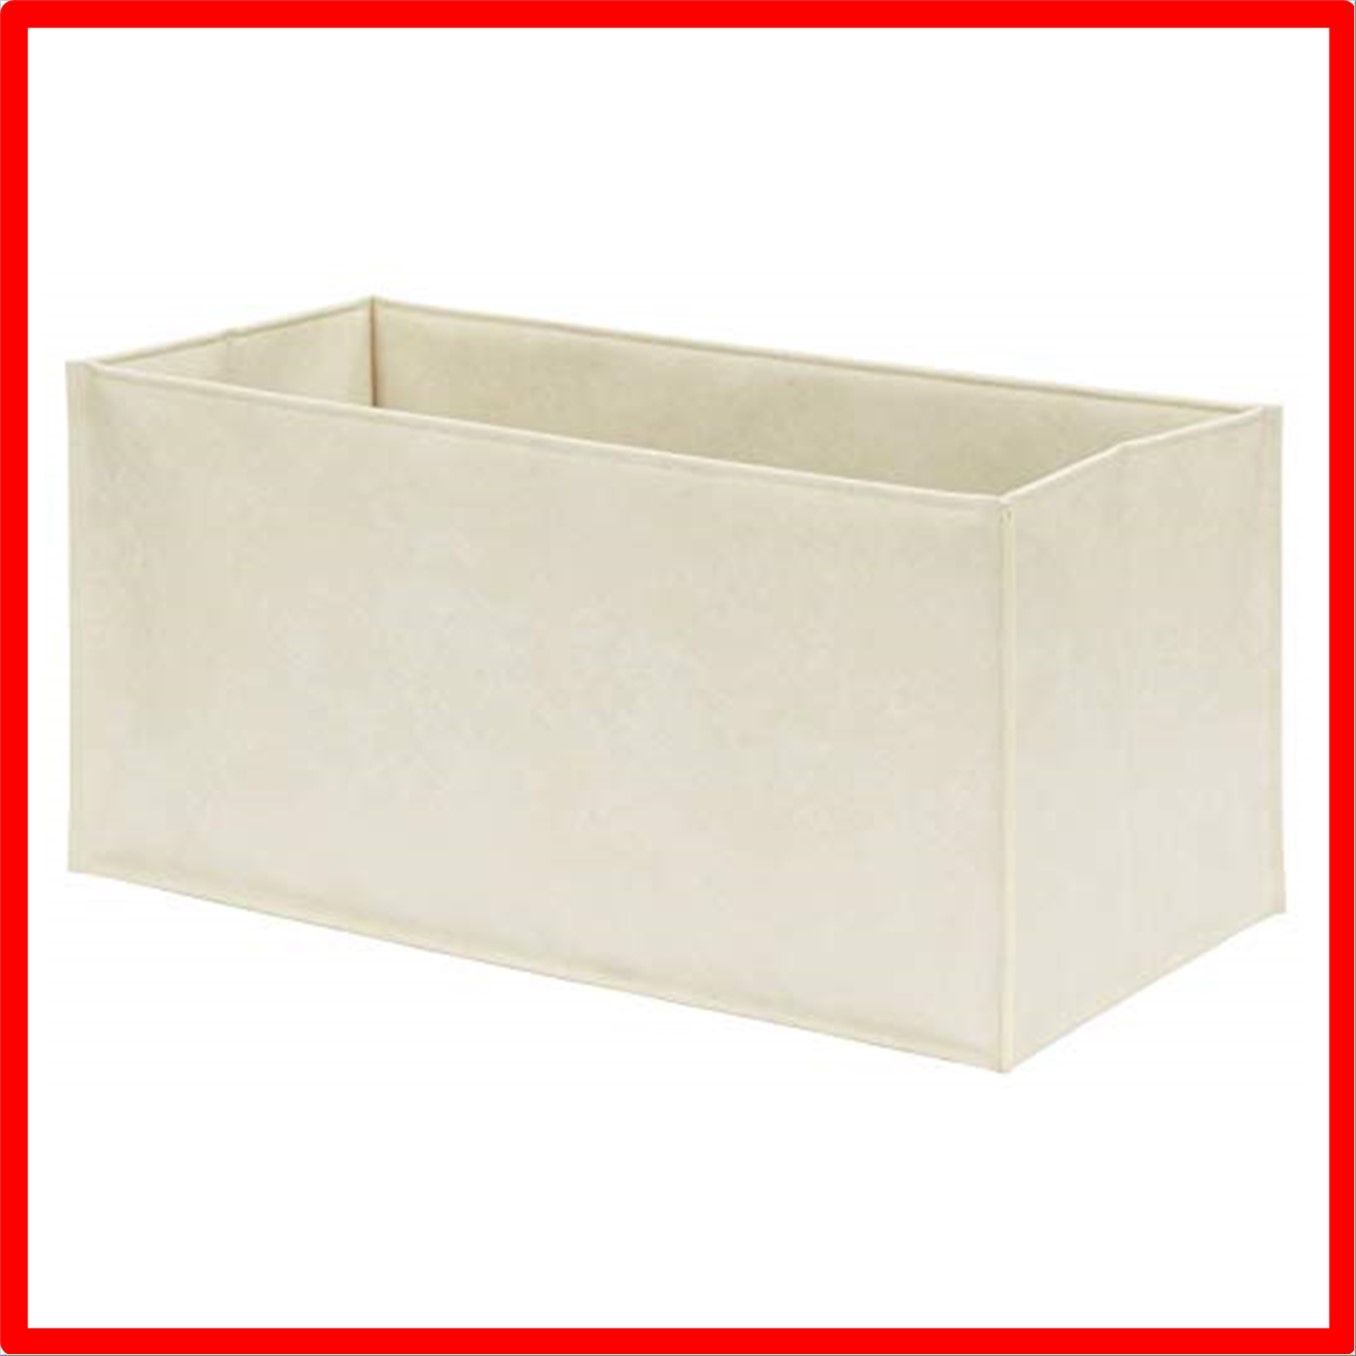 【色: オフホワイト】サキSaki 収納ボックス オフホワイト 使用時約幅44×